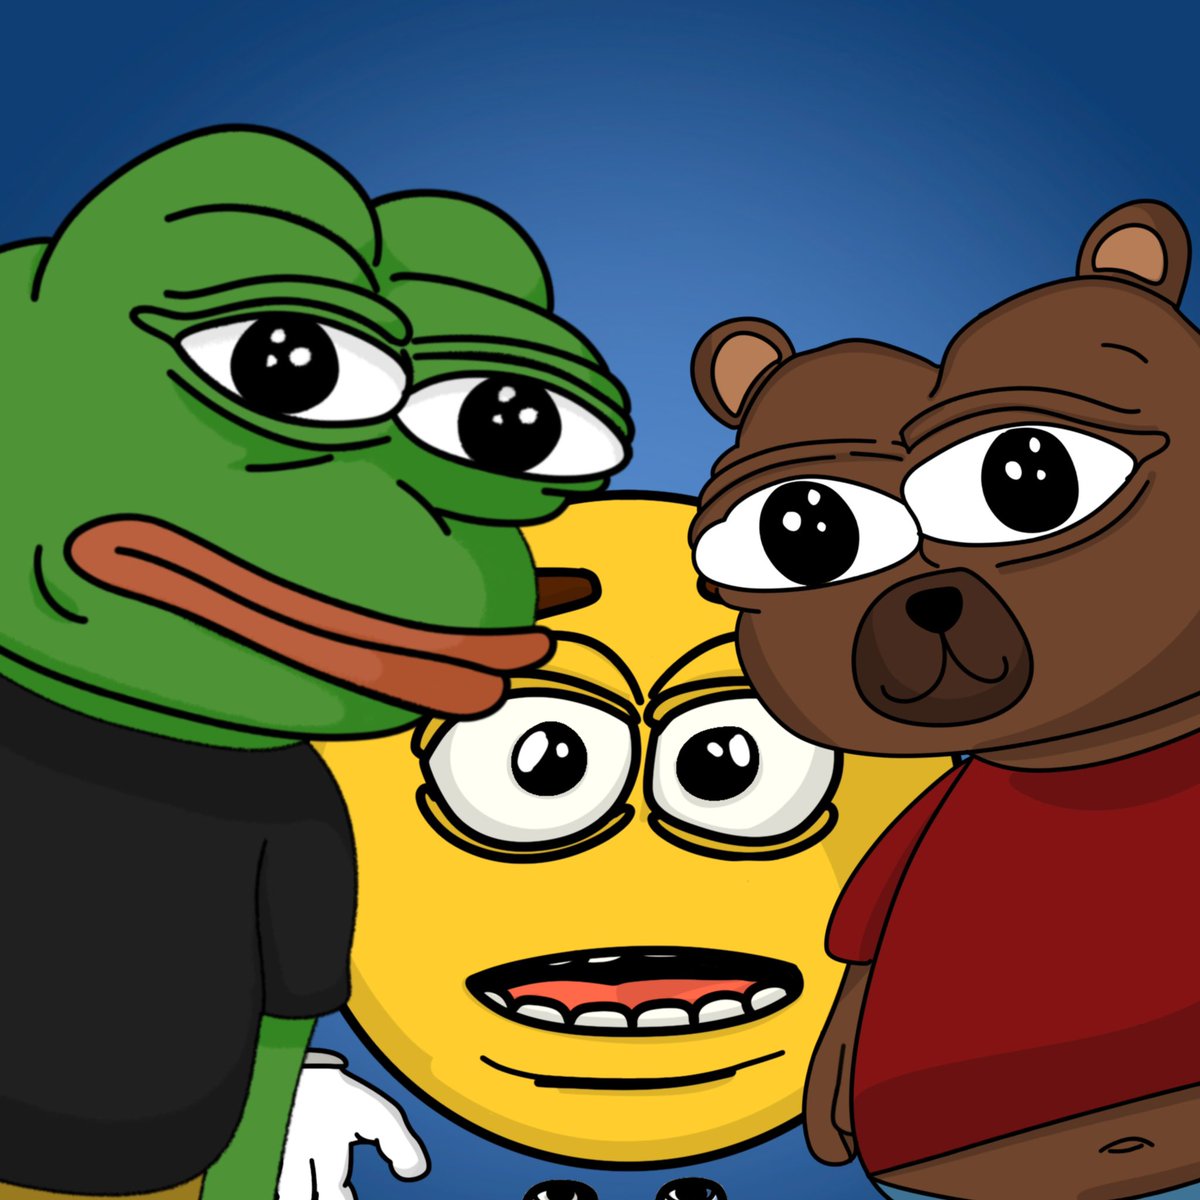 Pepe, Bobo, and Joe